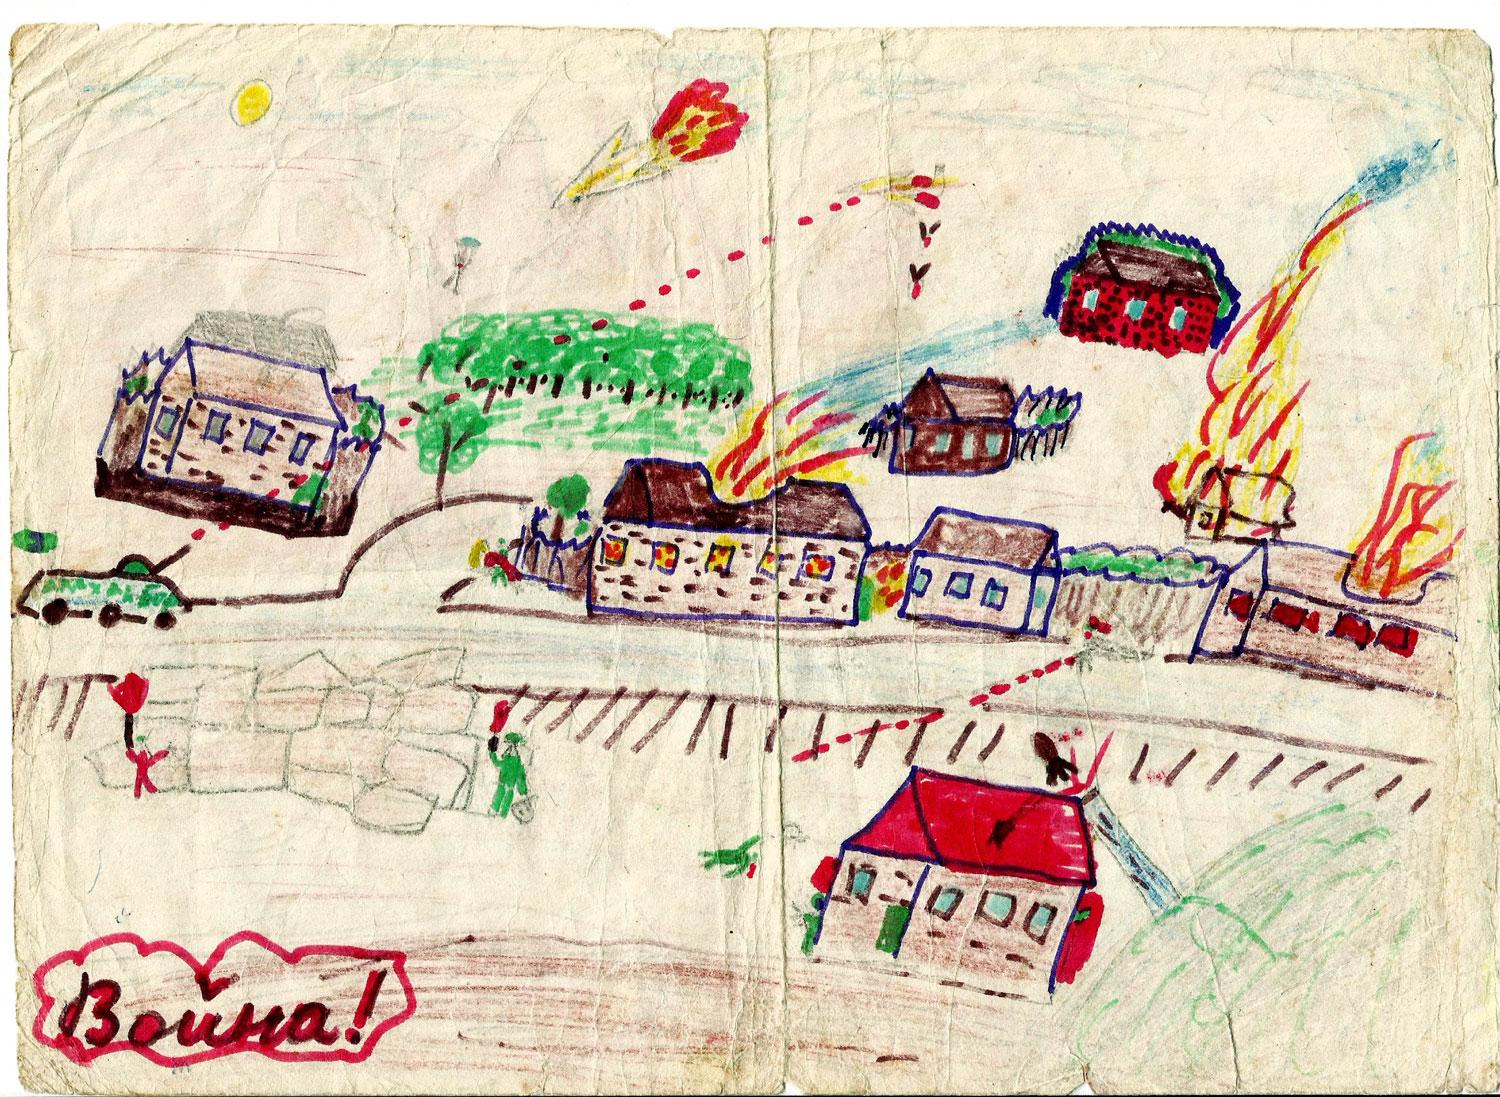 Háború! – ez a gyerekrajz aláírása Zserebcova naplójában